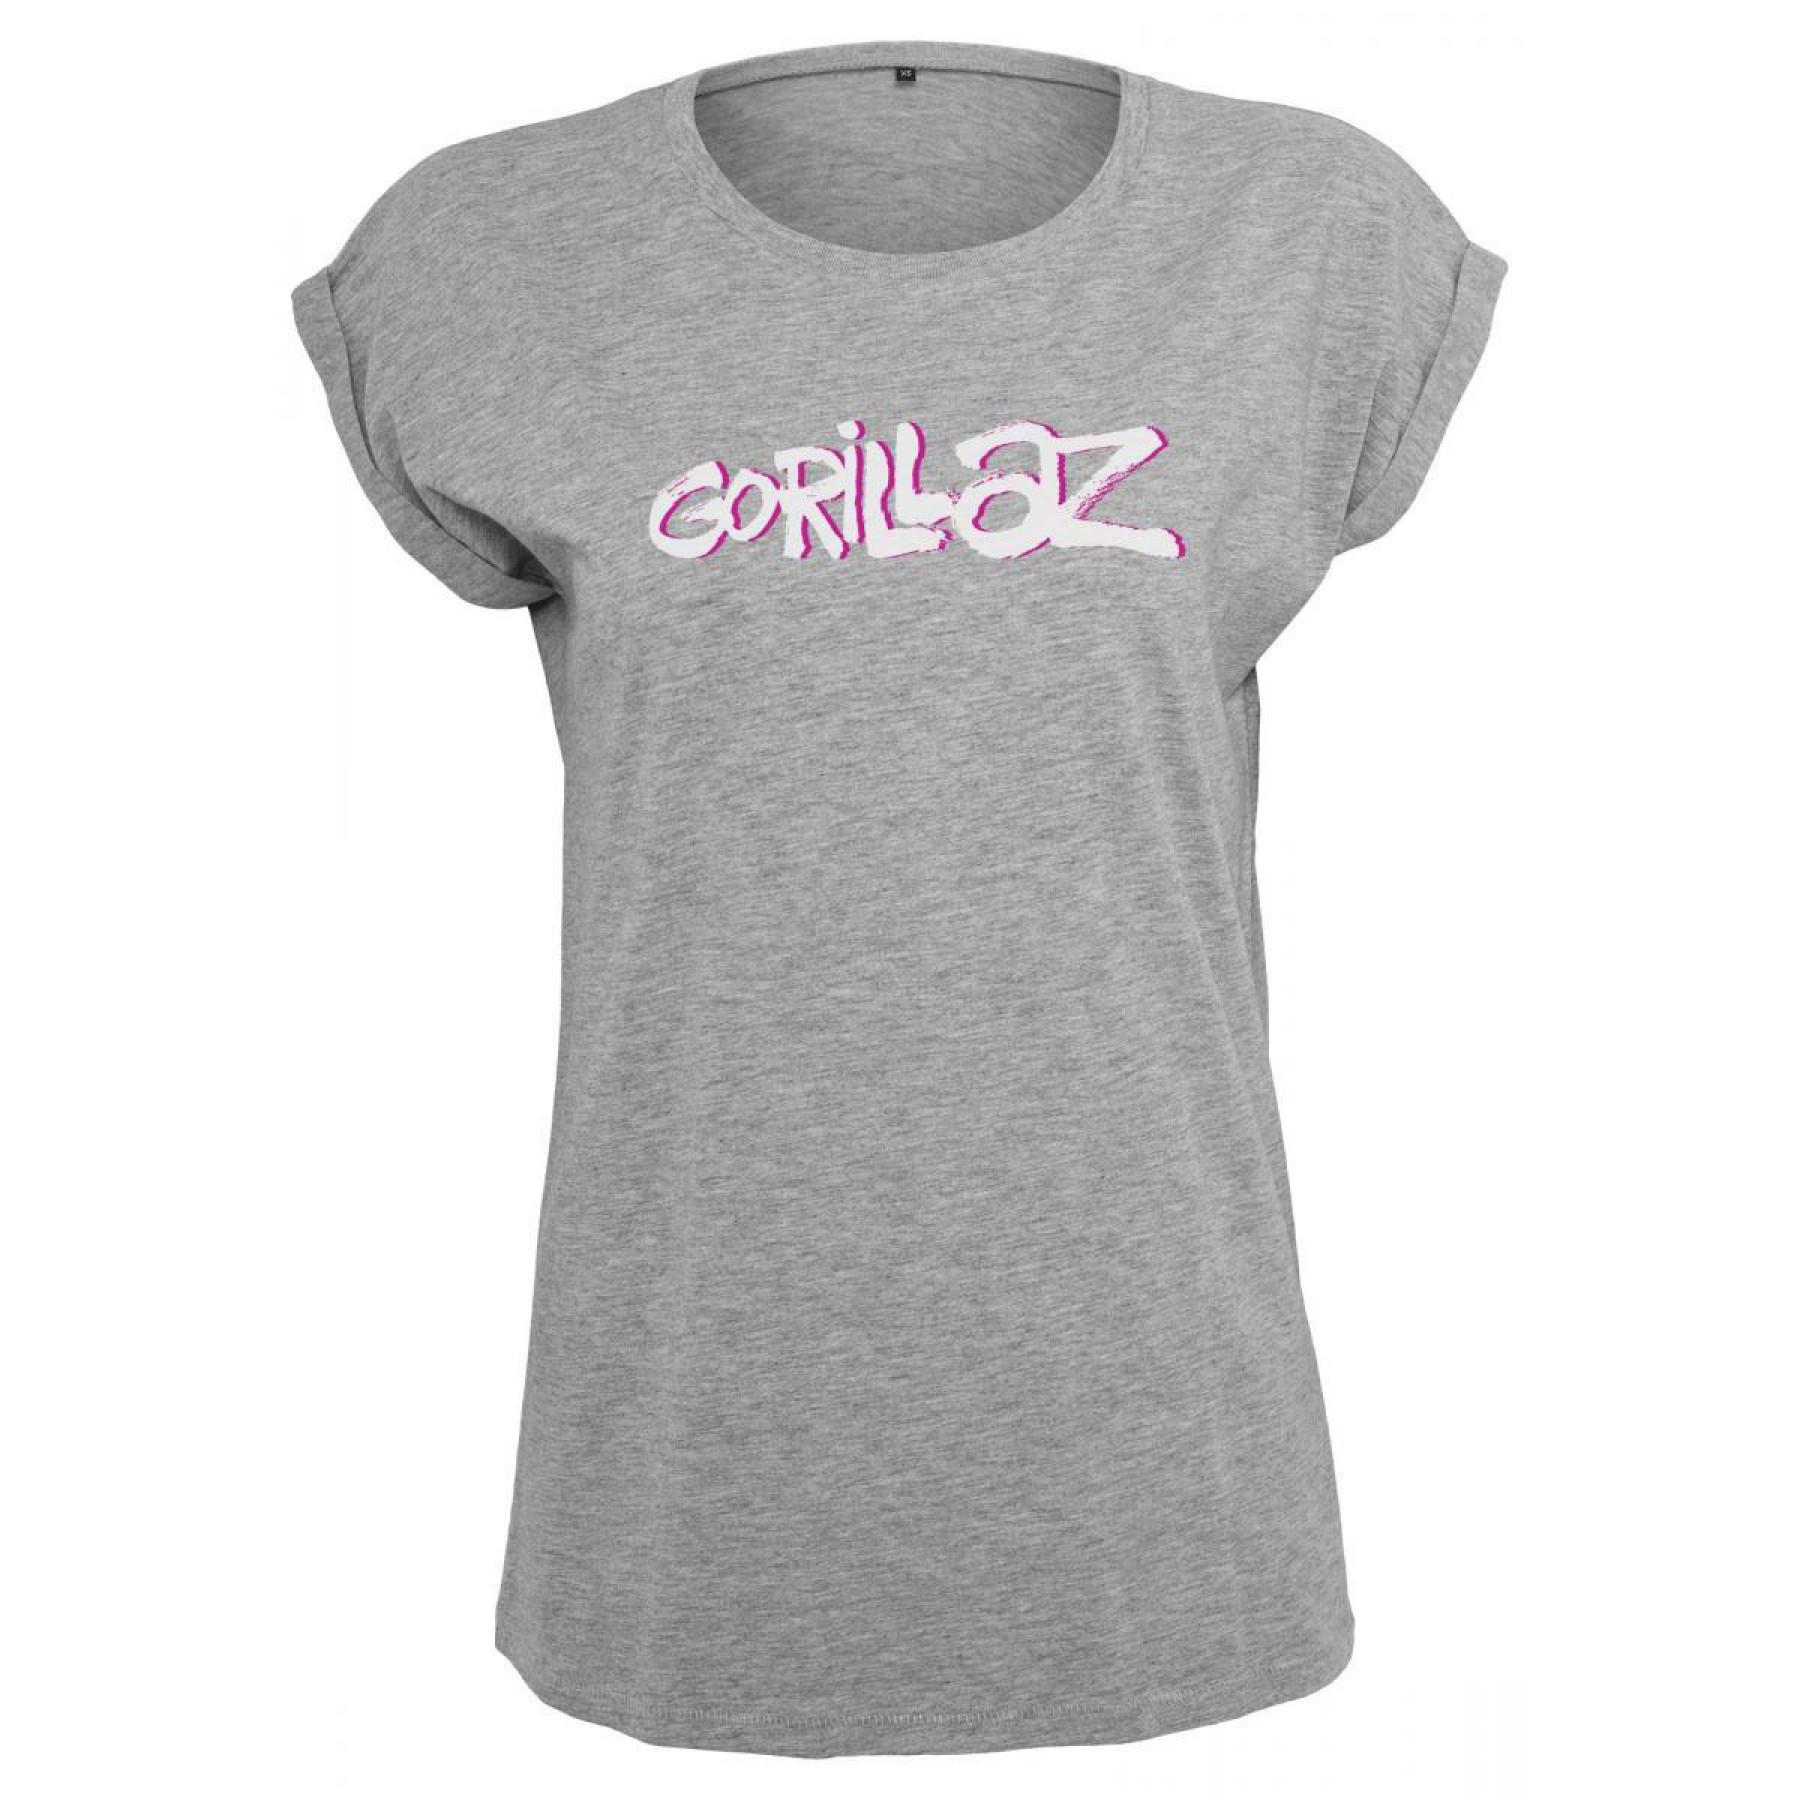 Camiseta mujer Urban Classic gorillaz logo